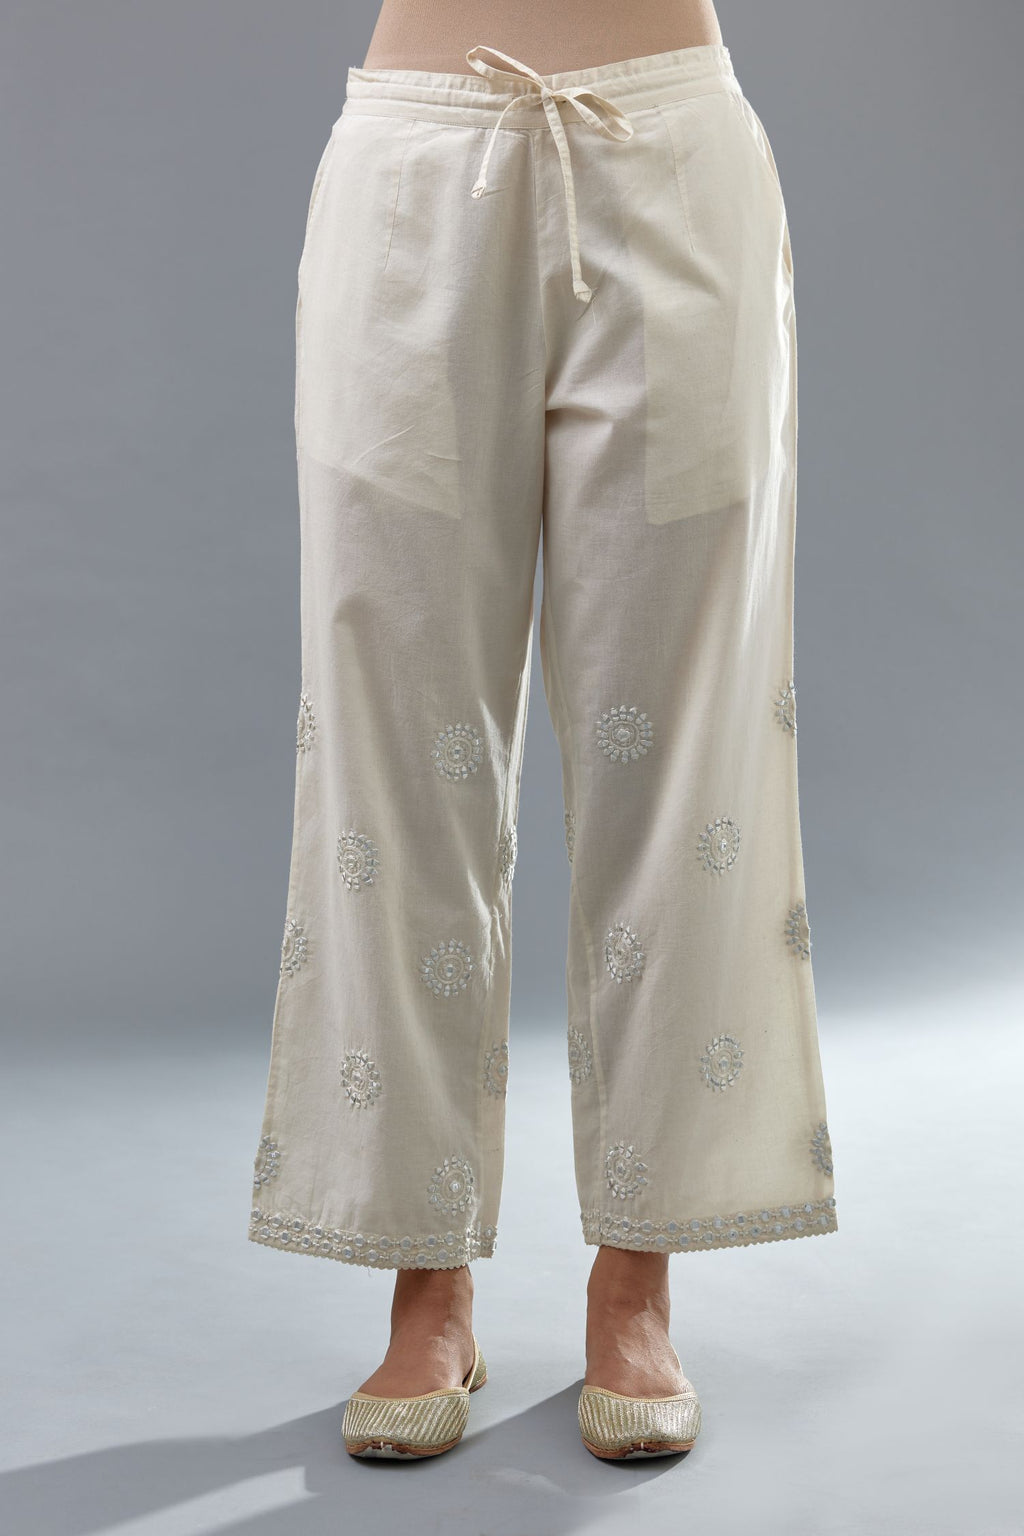 Khaki Cotton Chino Pants -Trim Fit | J. Press